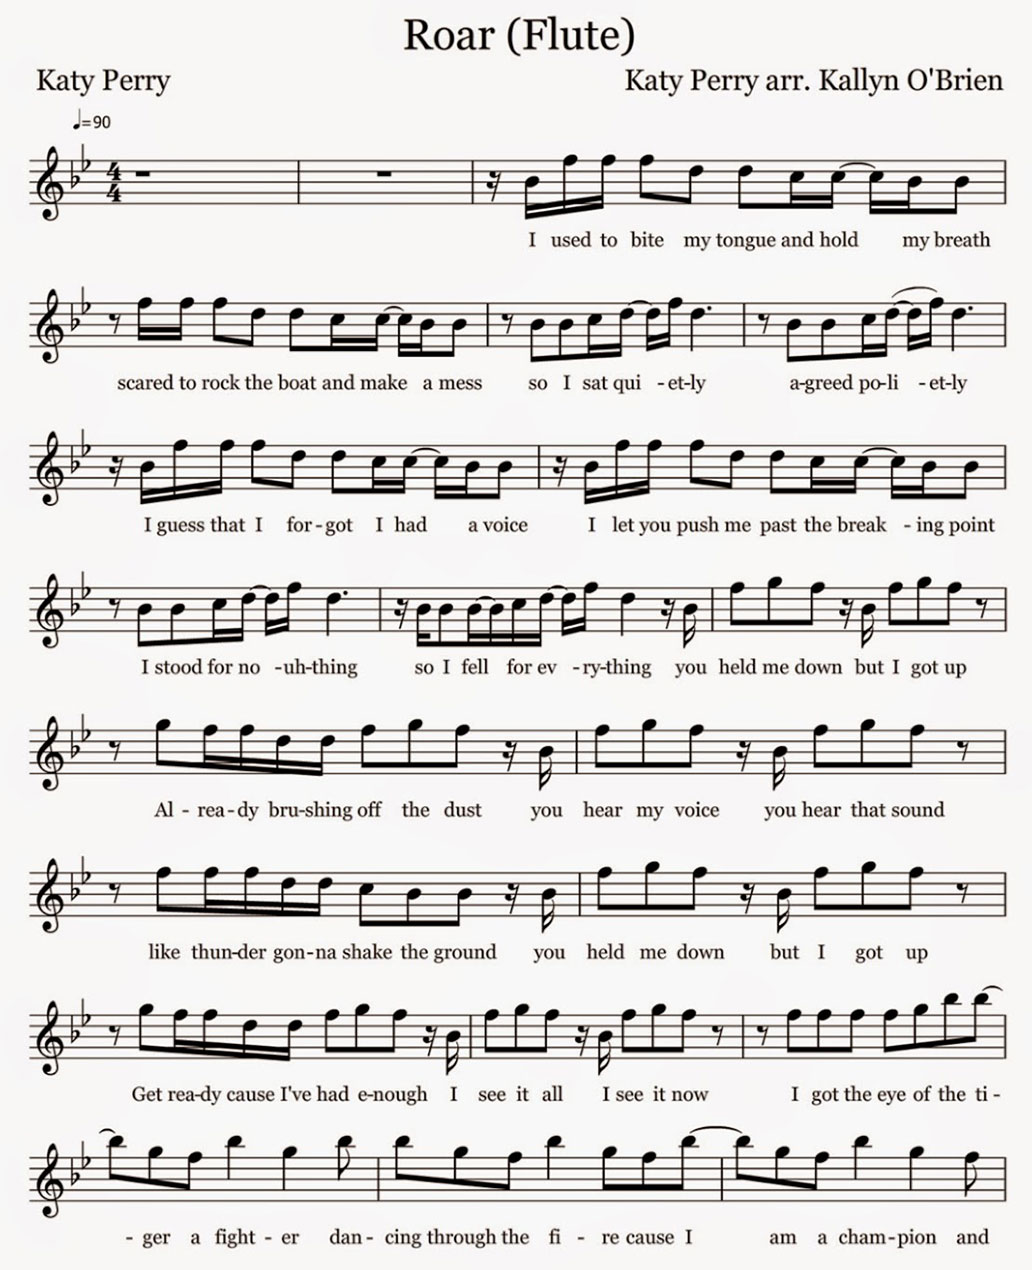 roar sheet music notes